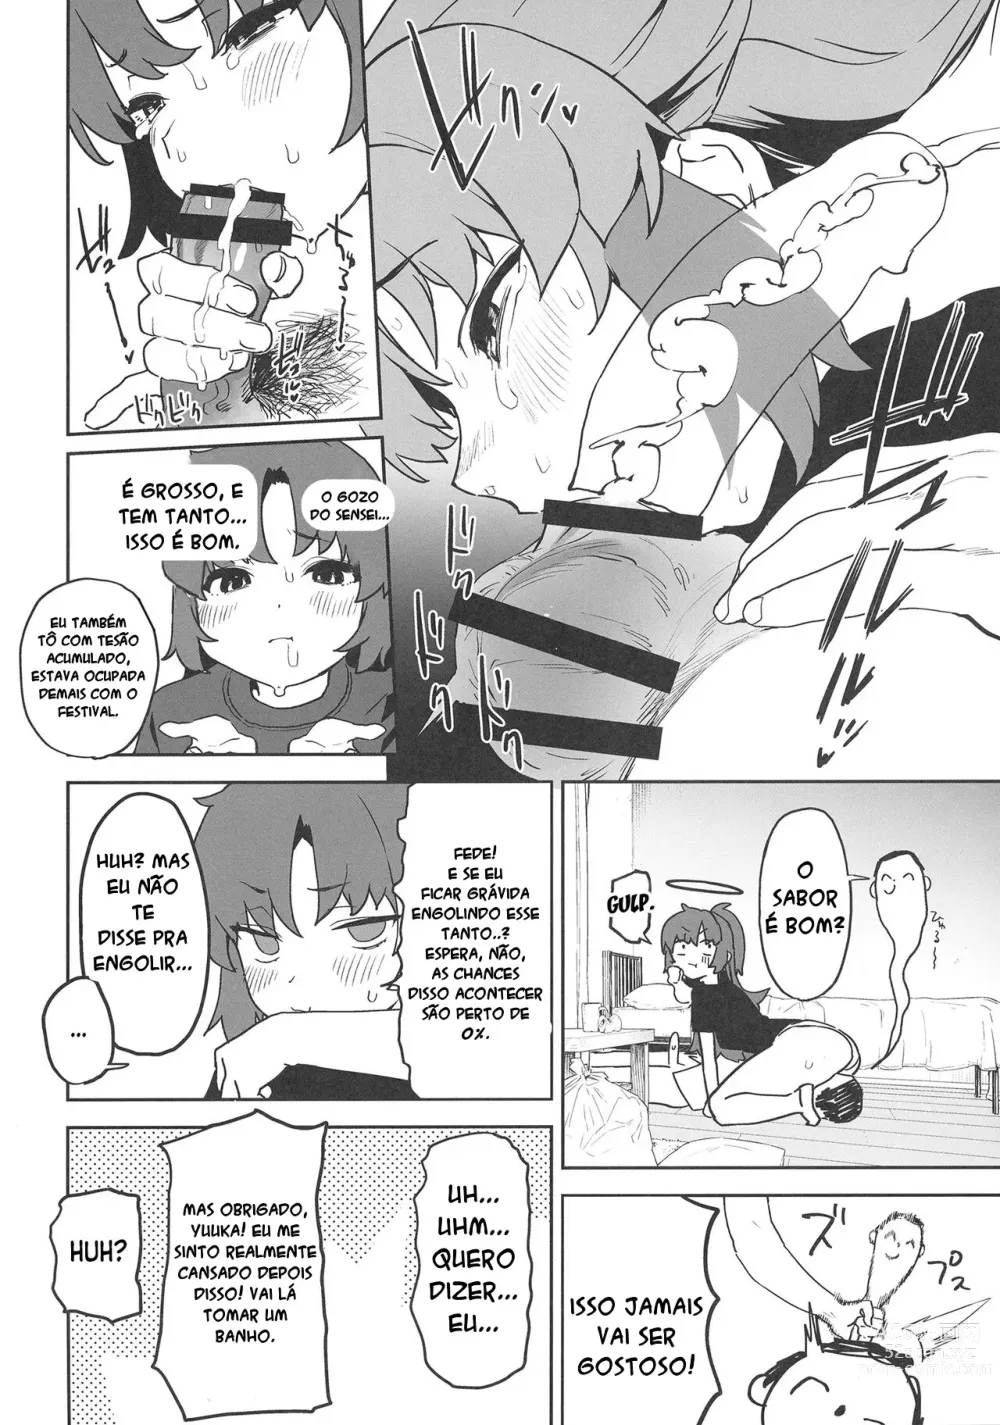 Page 12 of doujinshi Shimi Ase Yuuka no Mure Momo Manko